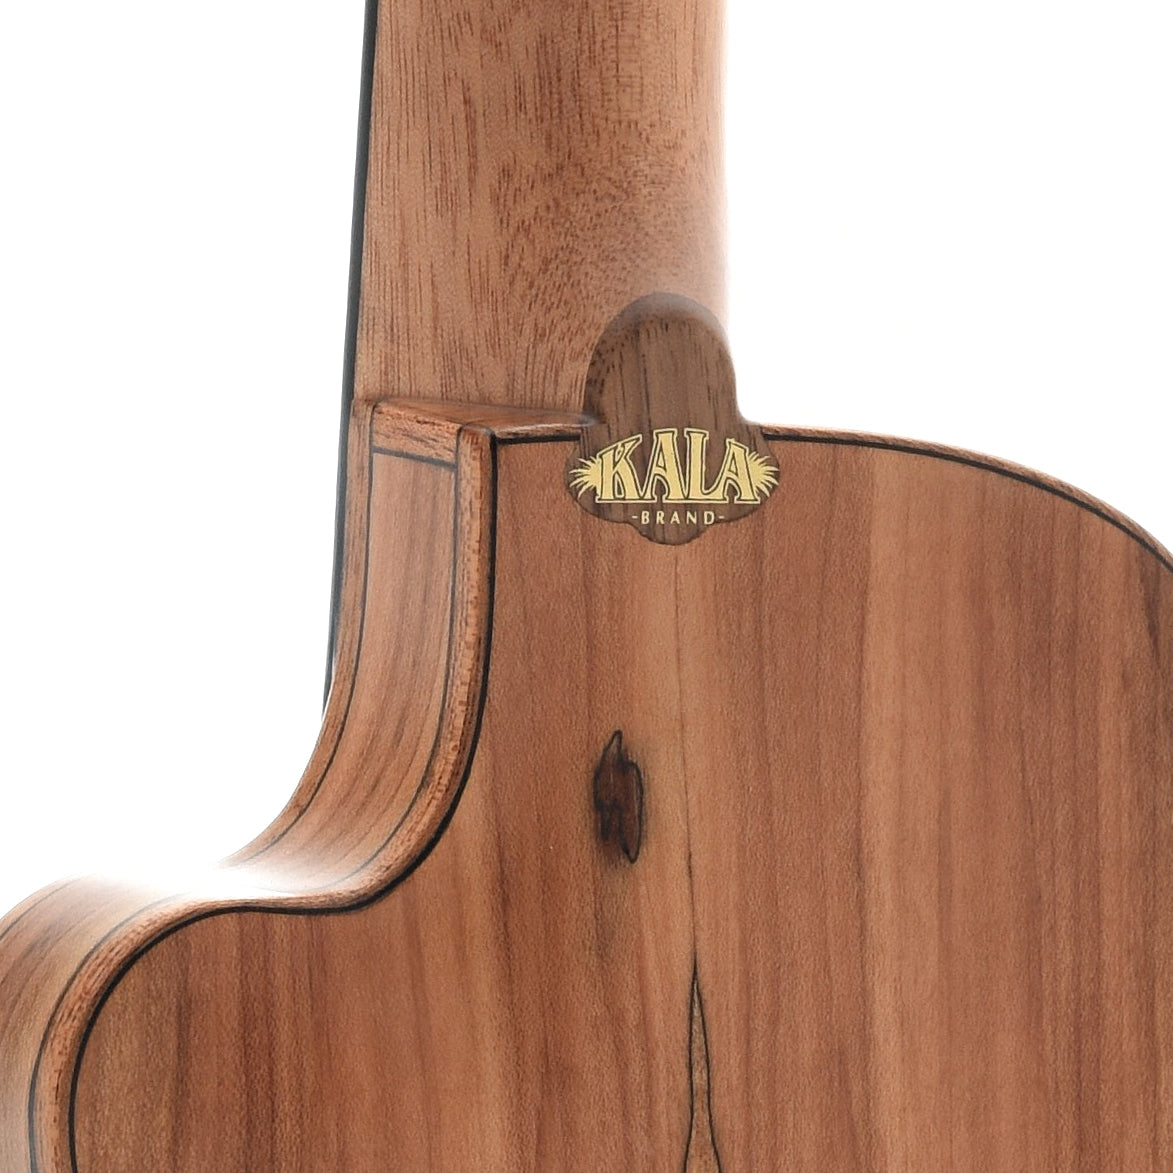 Image 8 of Kala KA-SSTU-SMC-C Thinline Travel Concert Cutaway Ukulele, with Gigbag - SKU# KATUSM-C : Product Type Concert Ukuleles : Elderly Instruments